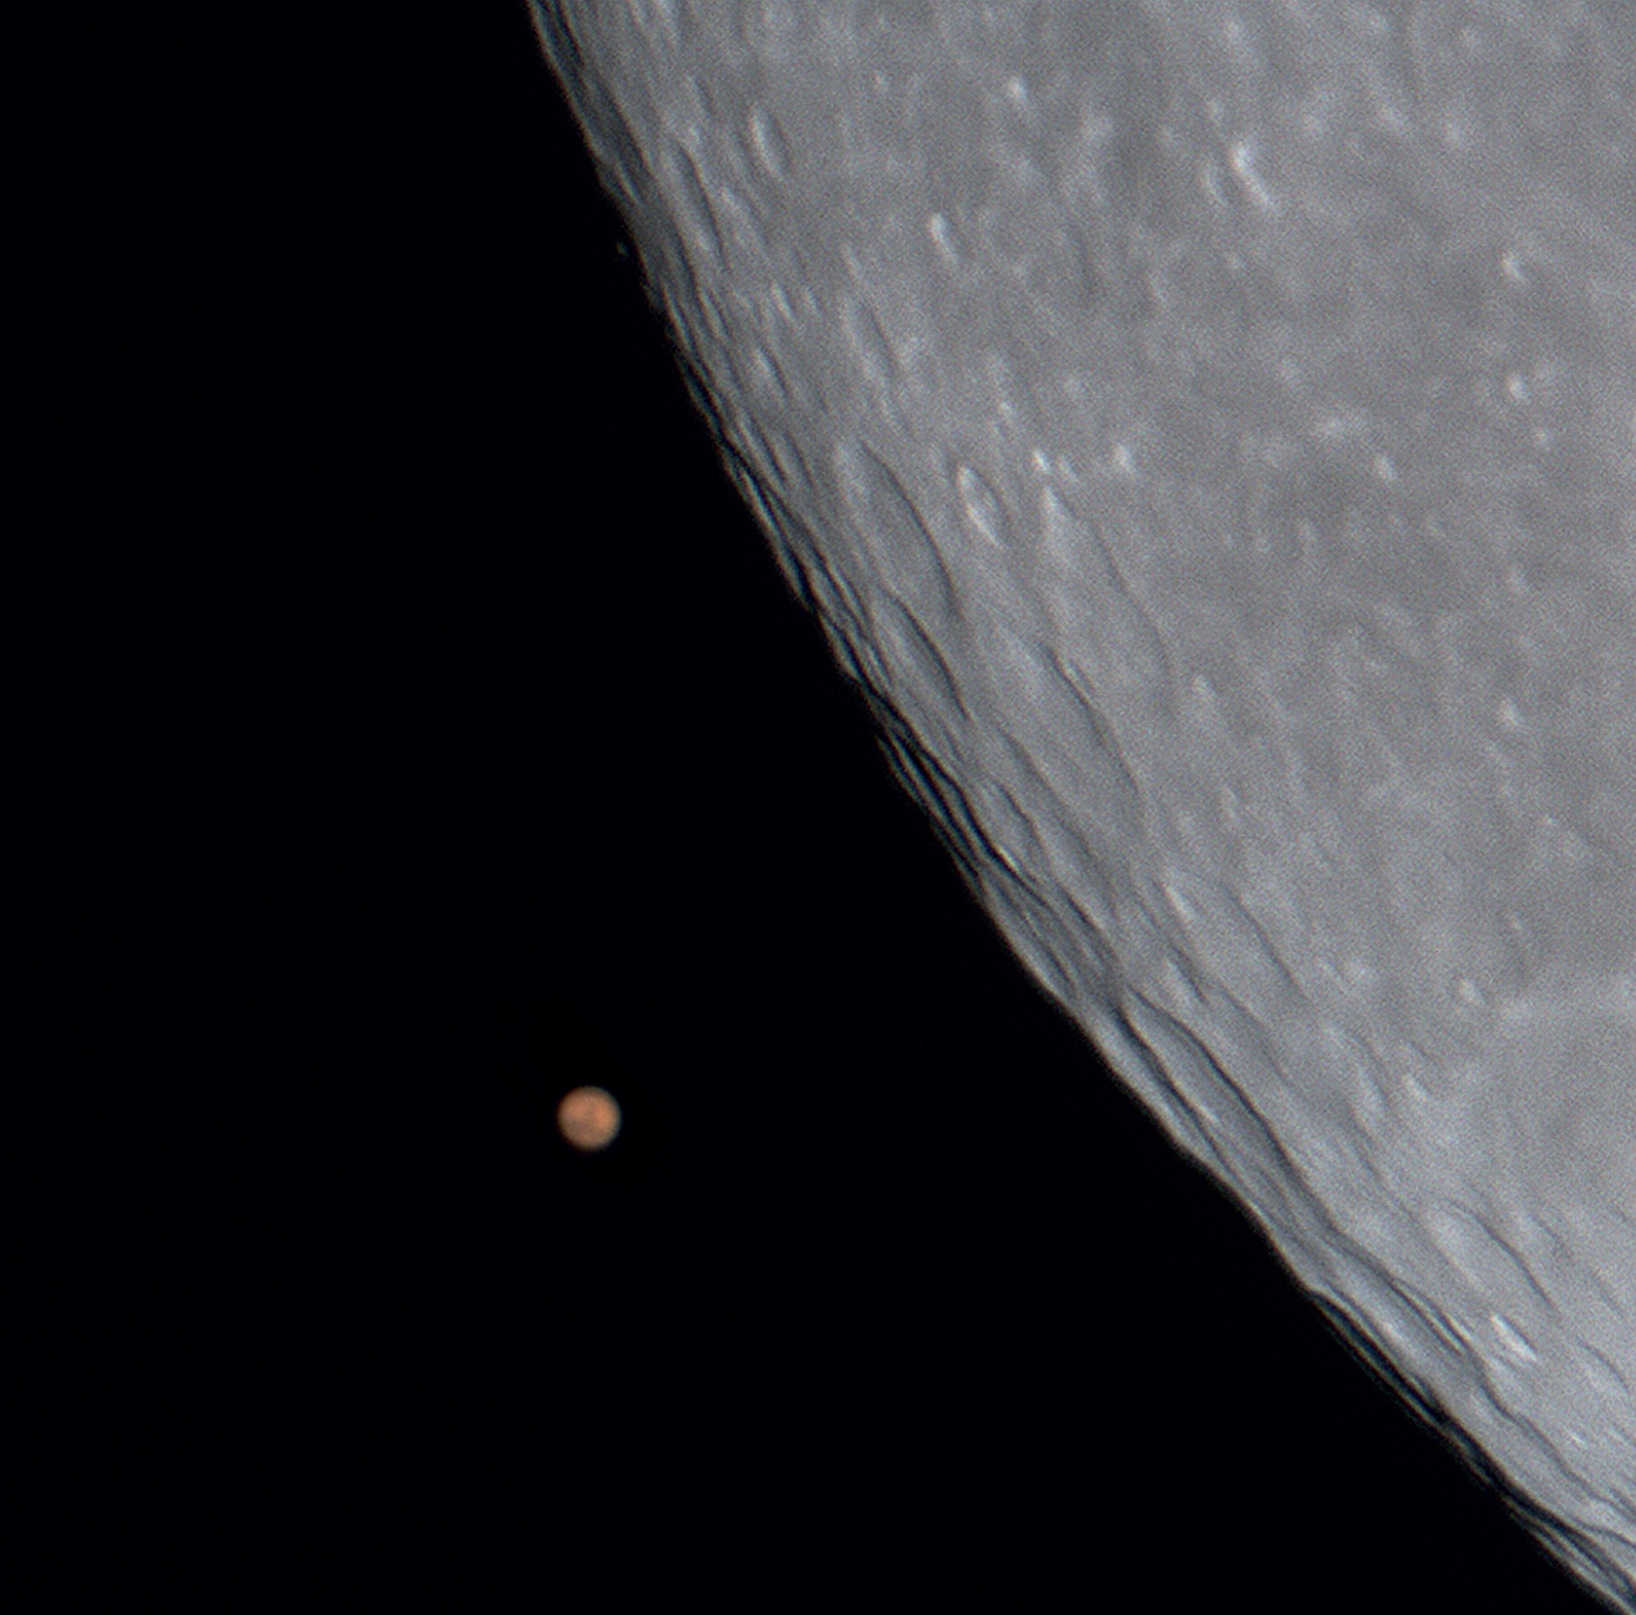 Zakrycie Marsa przez Księżyc w dniu 24.12.2007. Zdjęcie wykonane  astrokamerą przez SCT o aperturze 200mm i ogniskowej 2000mm. U. Dittler